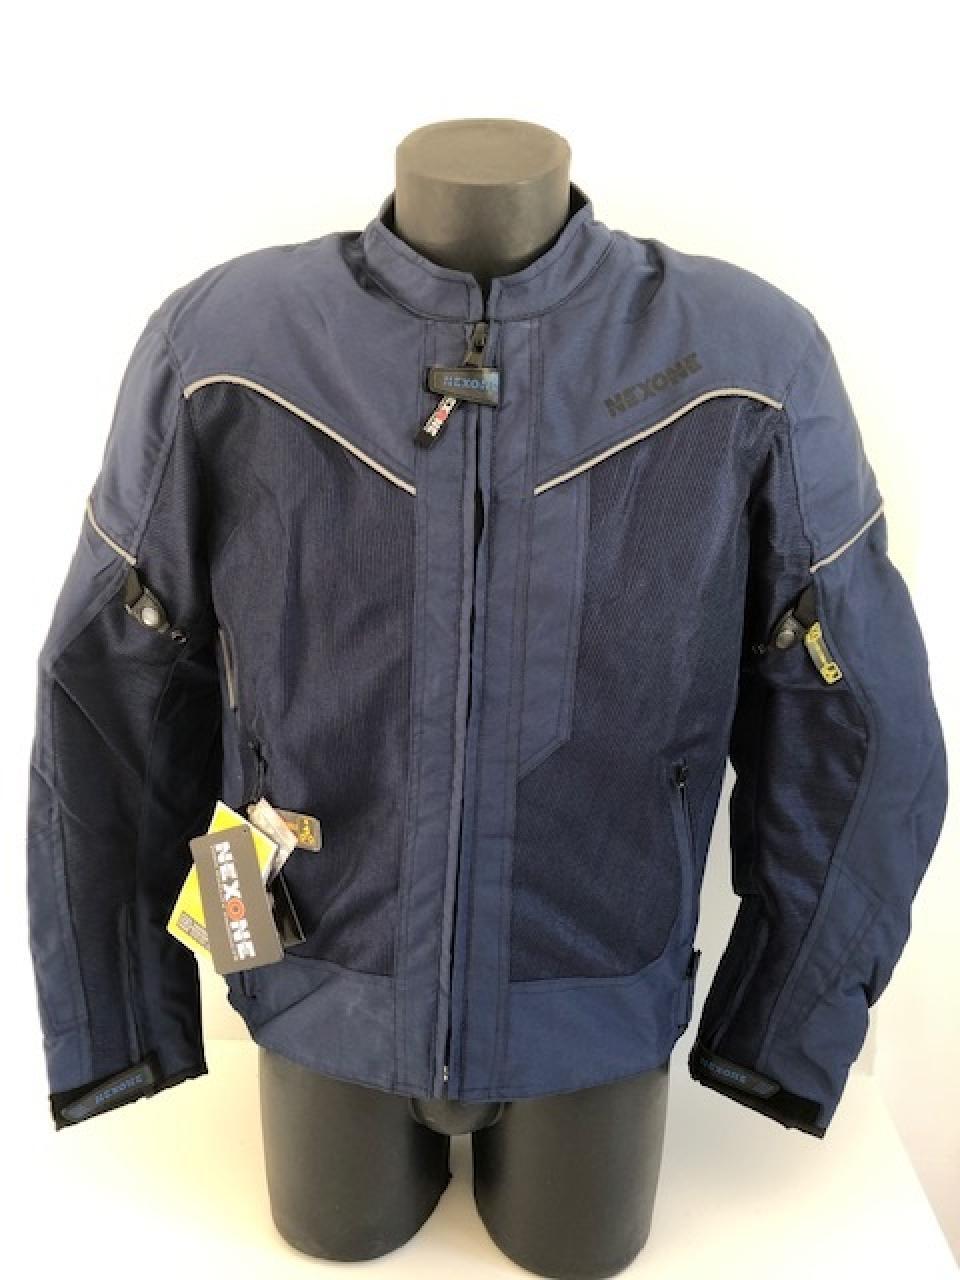 Blouson veste pour moto Homme Nexone Eté Flavio bleu Textile  Taille S homologué CE